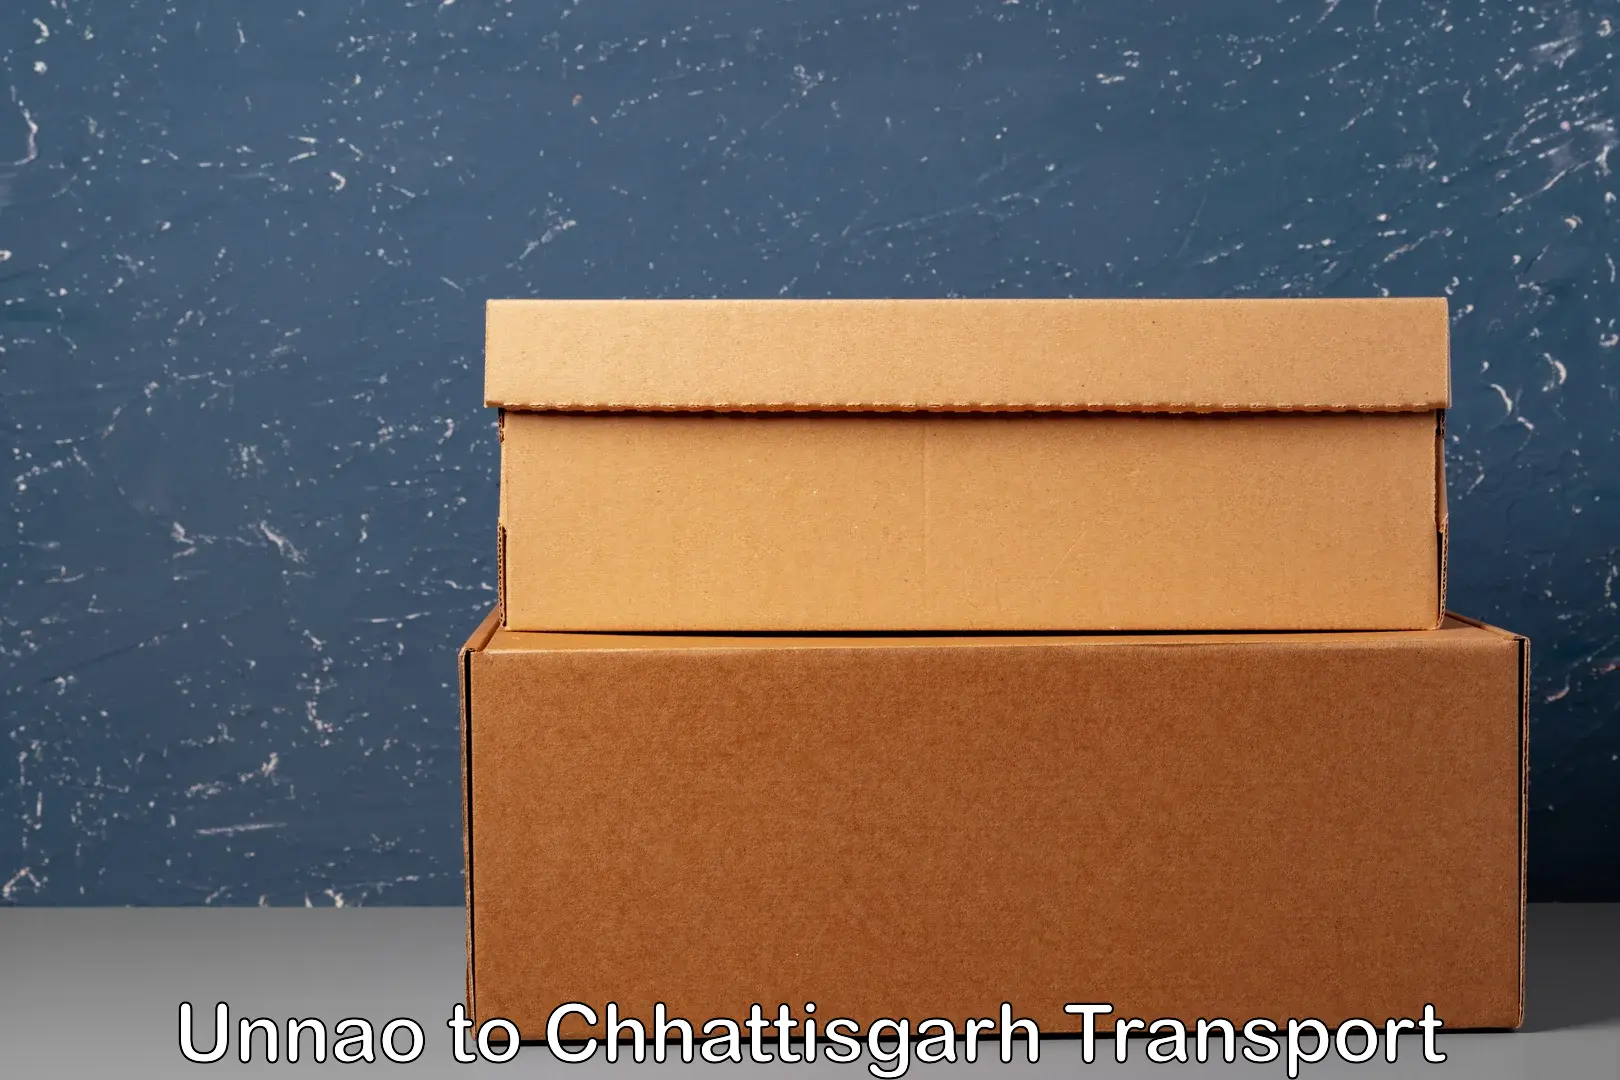 Cargo train transport services Unnao to Chhattisgarh